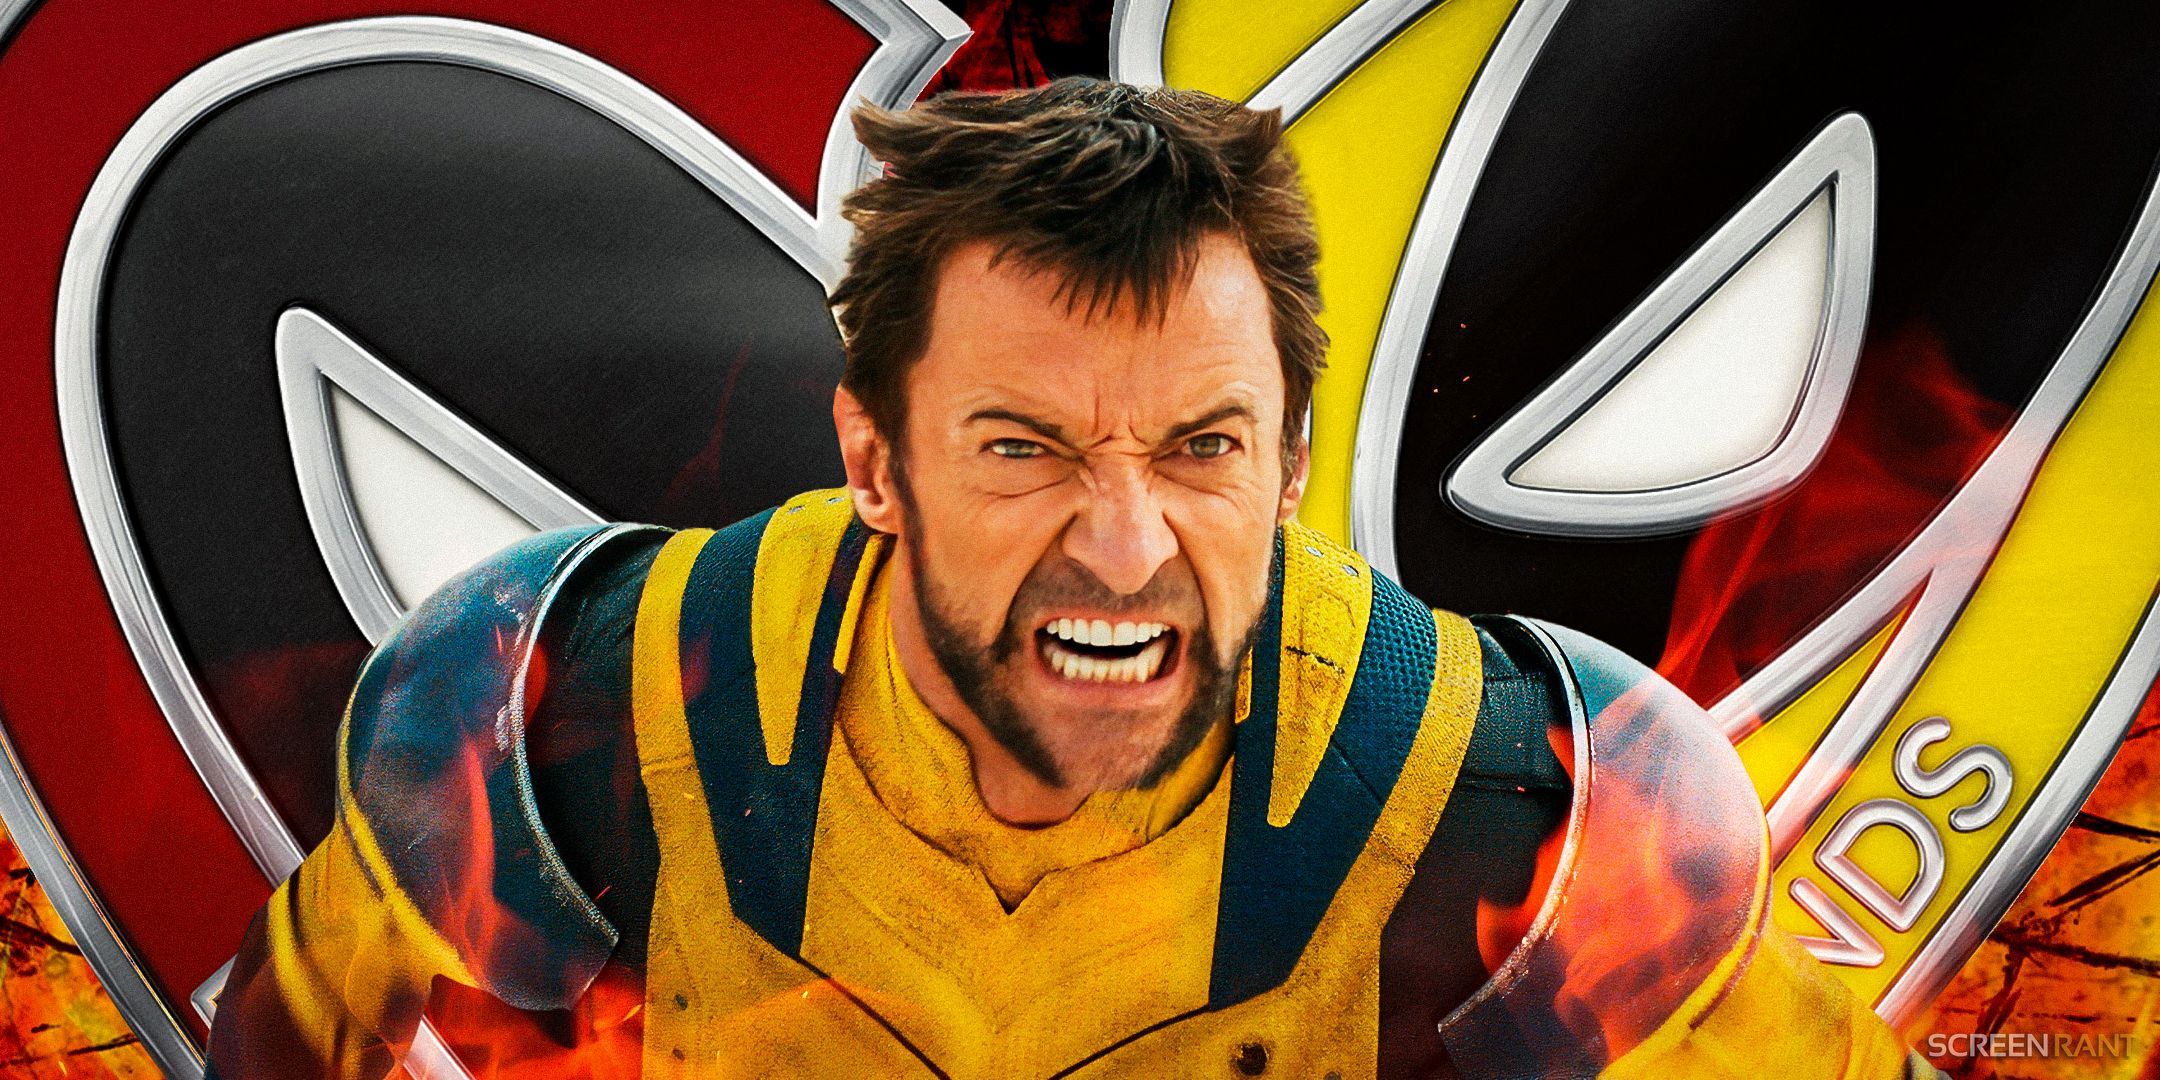 Hugh Jackman como Wolverine rosnando em uma posição de luta com os colares de amizade de Deadpool e Wolverine ao fundo